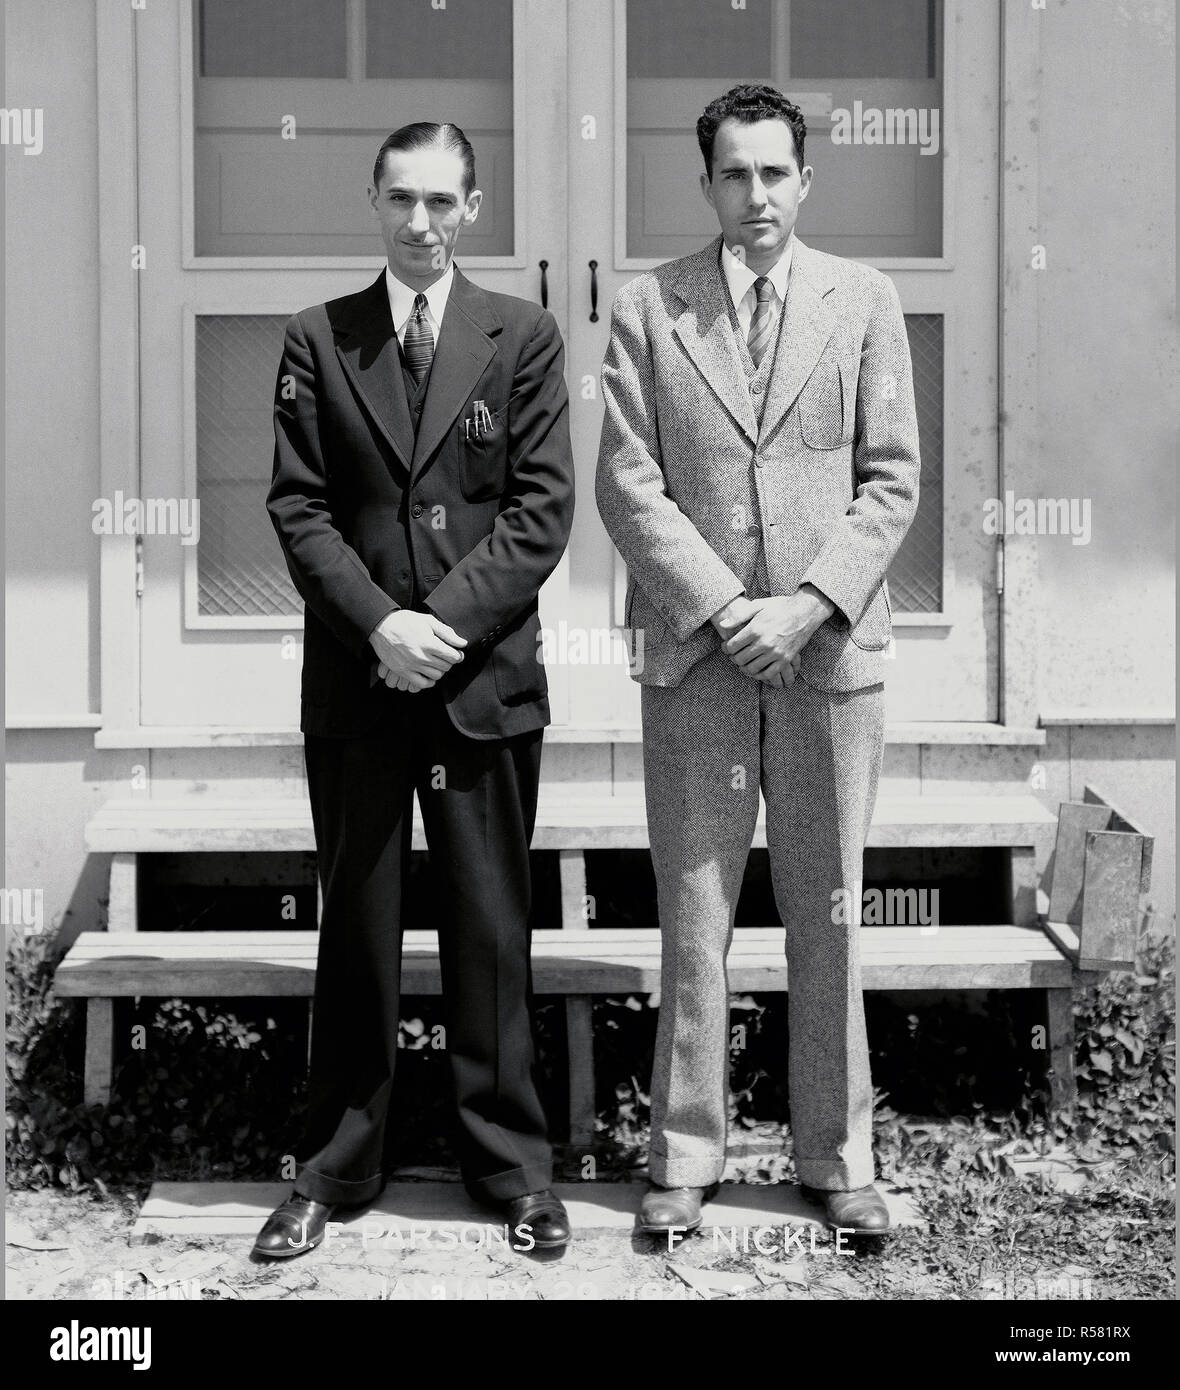 Premiers membres du personnel d'Ames : John F Parsons (à gauche) et R. Ferril Nickle (droite) debout devant des abri de construction. ca. 1940 Banque D'Images